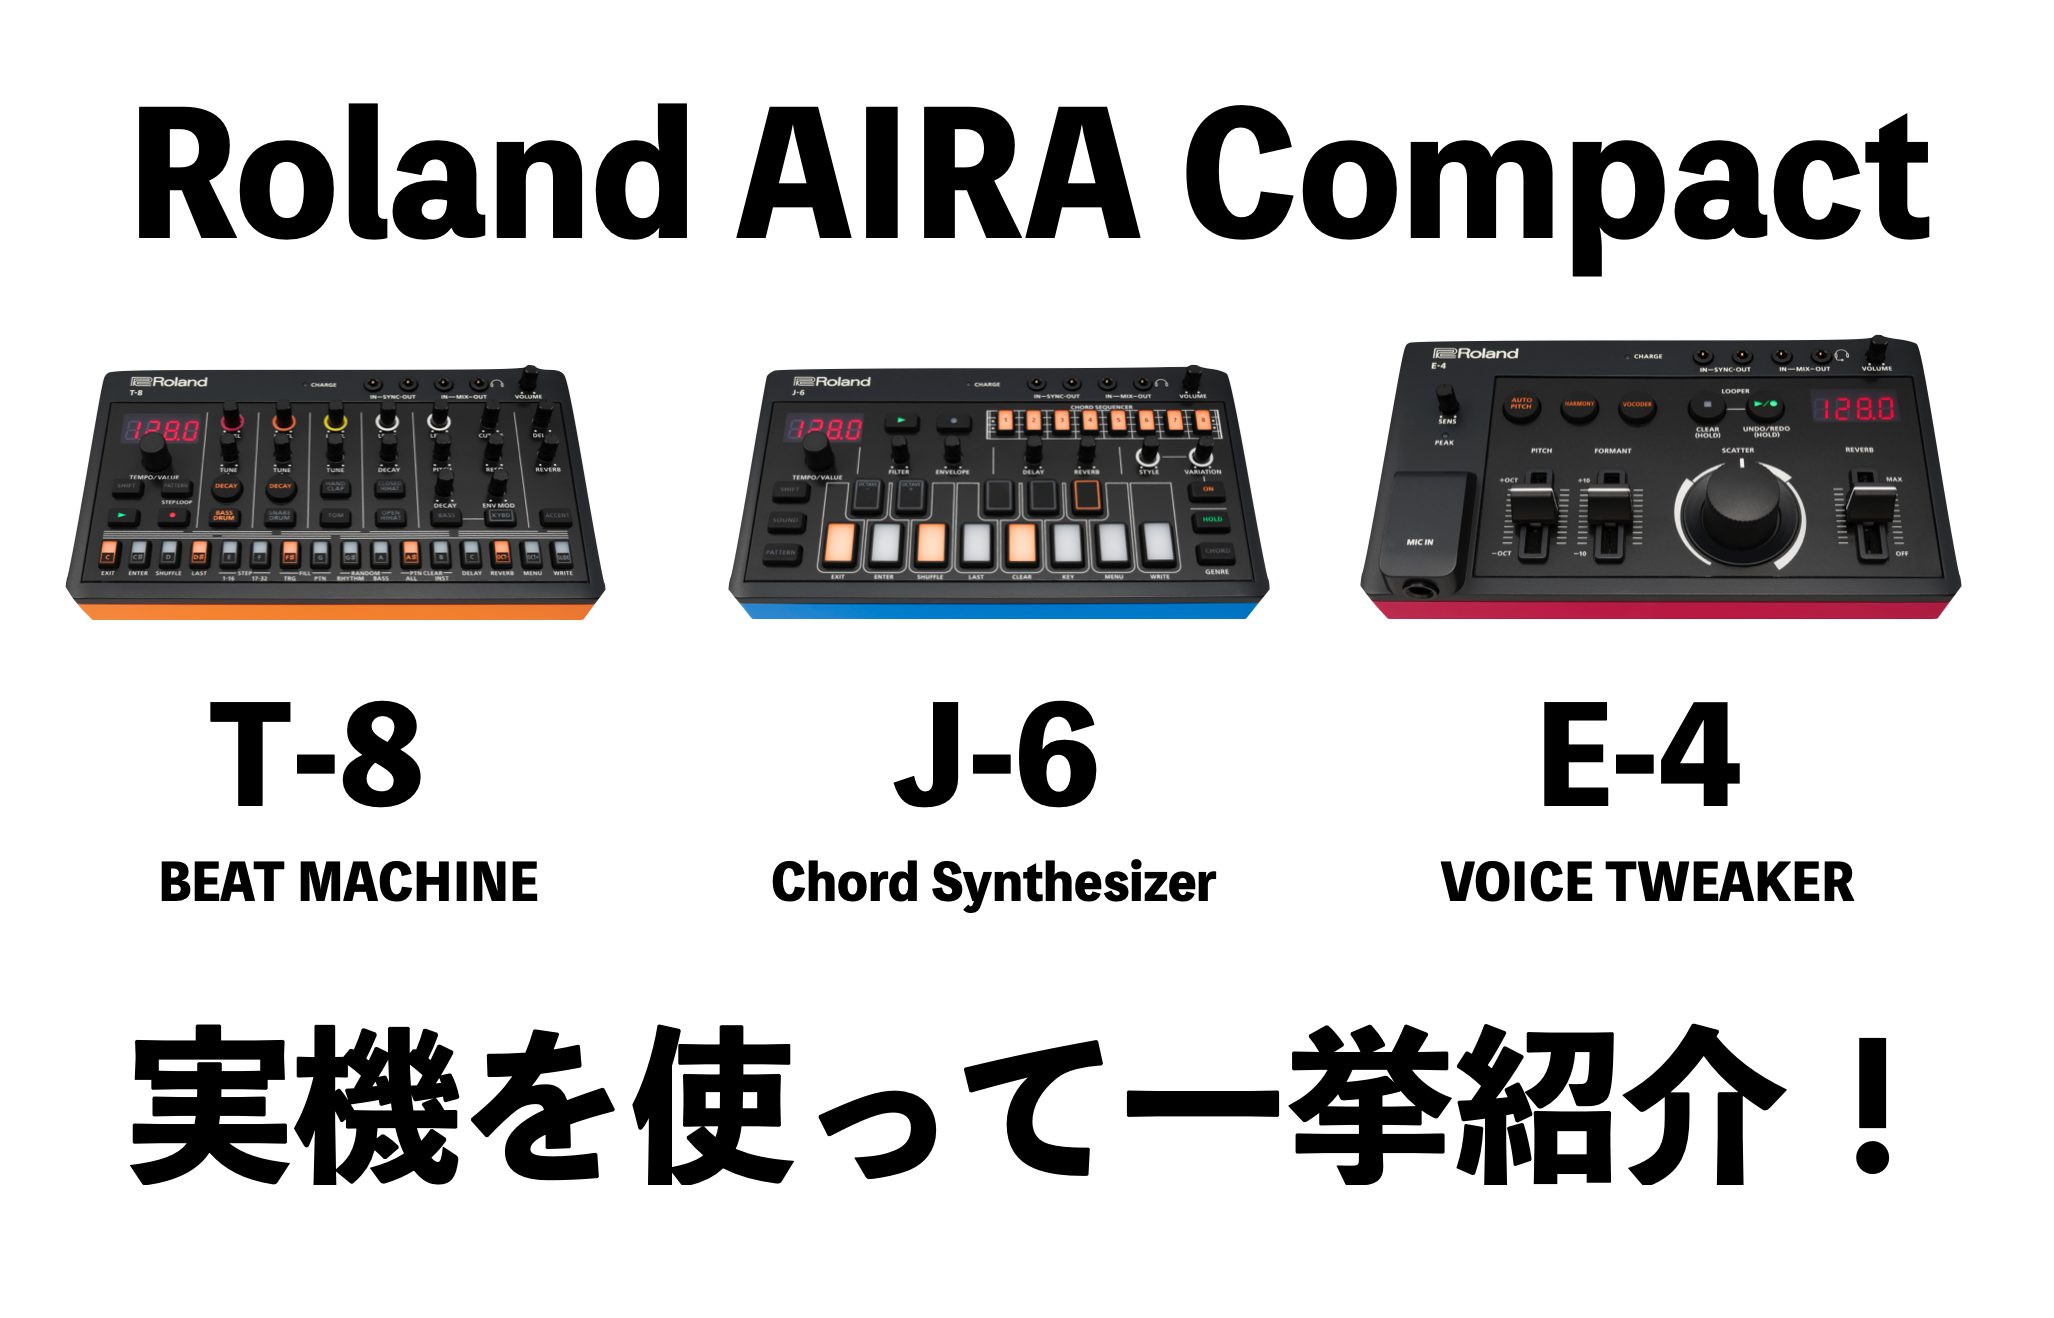 Roland AIRA Compactシリーズが新登場！T-8/J-6/E-4を一挙ご紹介